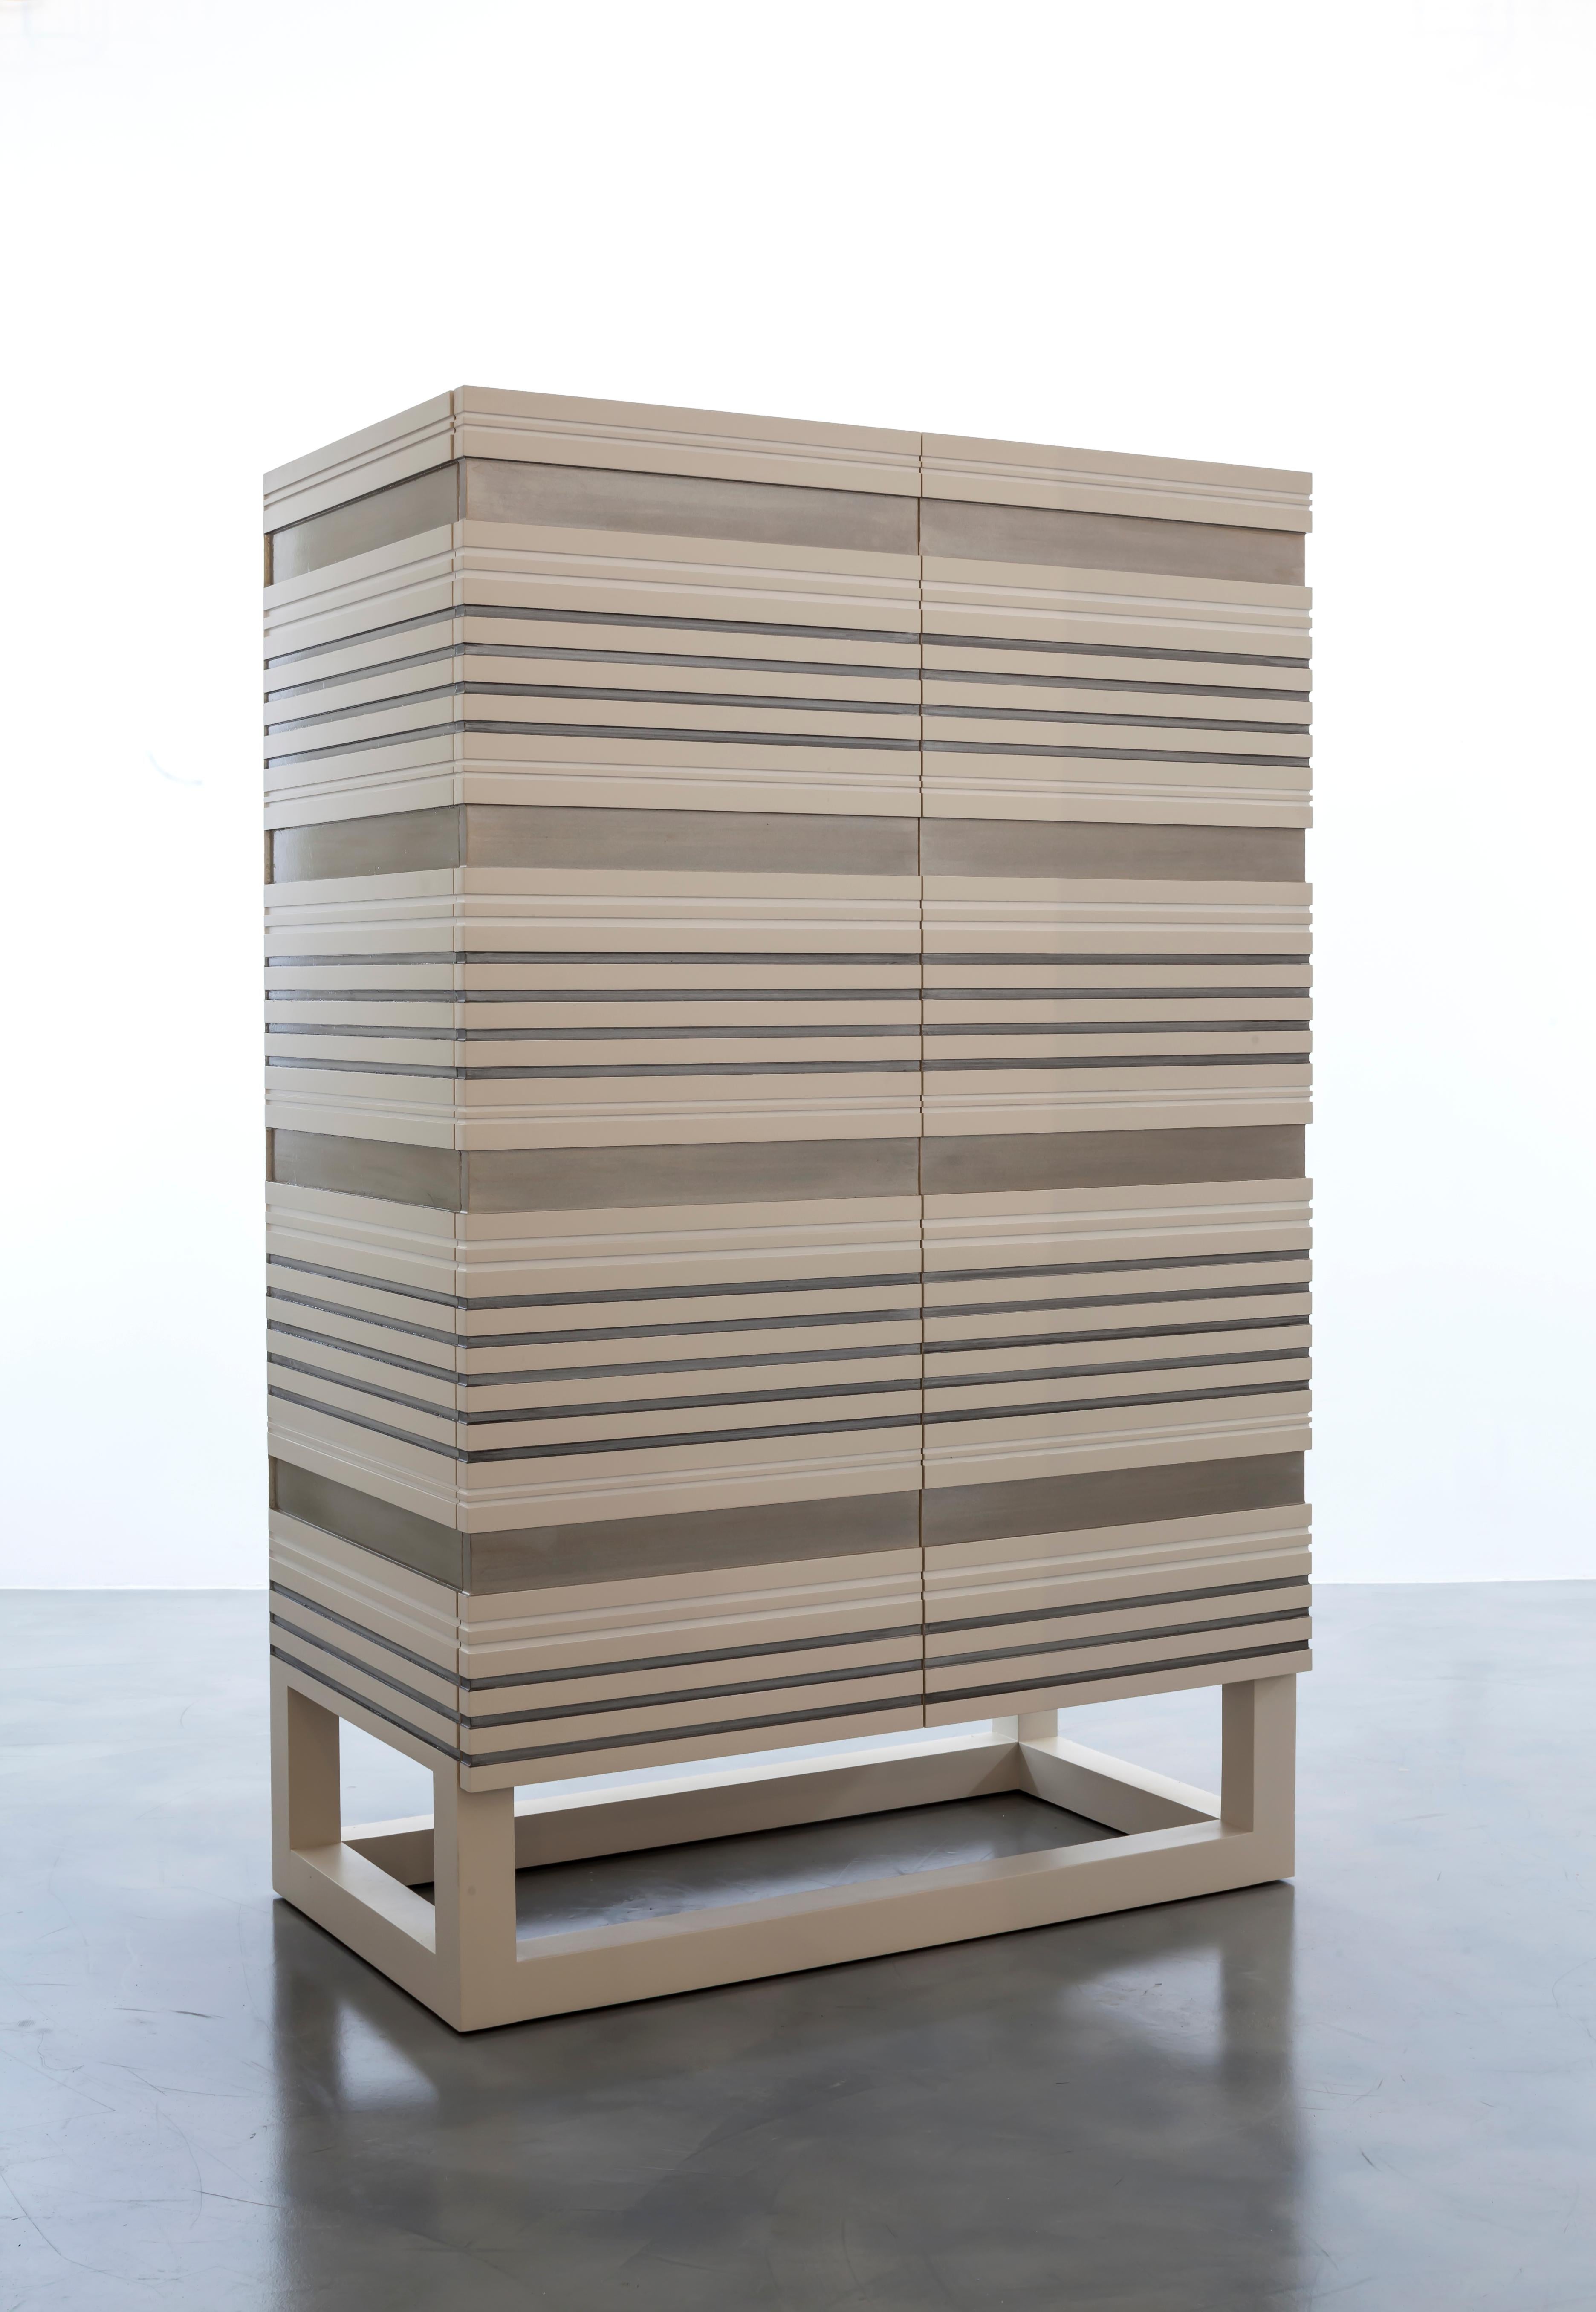 SABINE ARMOIRE - Moderner, maßgefertigter, geschichteter Schrank 

Der Schrank Sabine ist ein wunderschönes Möbelstück, das sich durch ein modernes, geschichtetes Design auszeichnet. Der Schrank wird mit Präzision und Liebe zum Detail gebaut, um